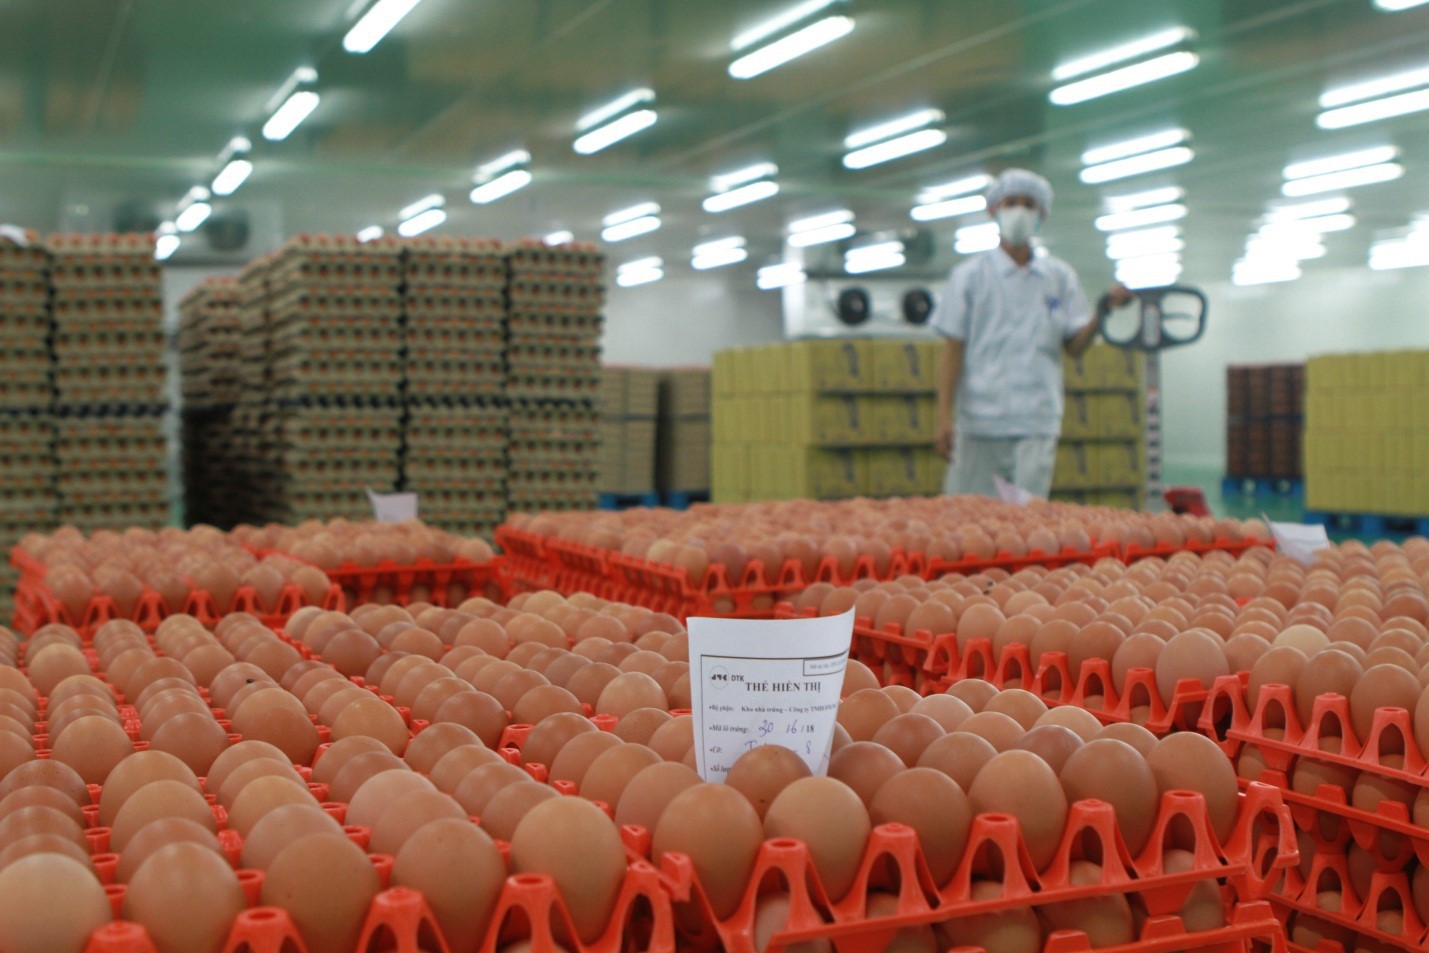 Trang trại sản xuất trứng gà hiện đại và an toàn nhất thủ đô Kigali